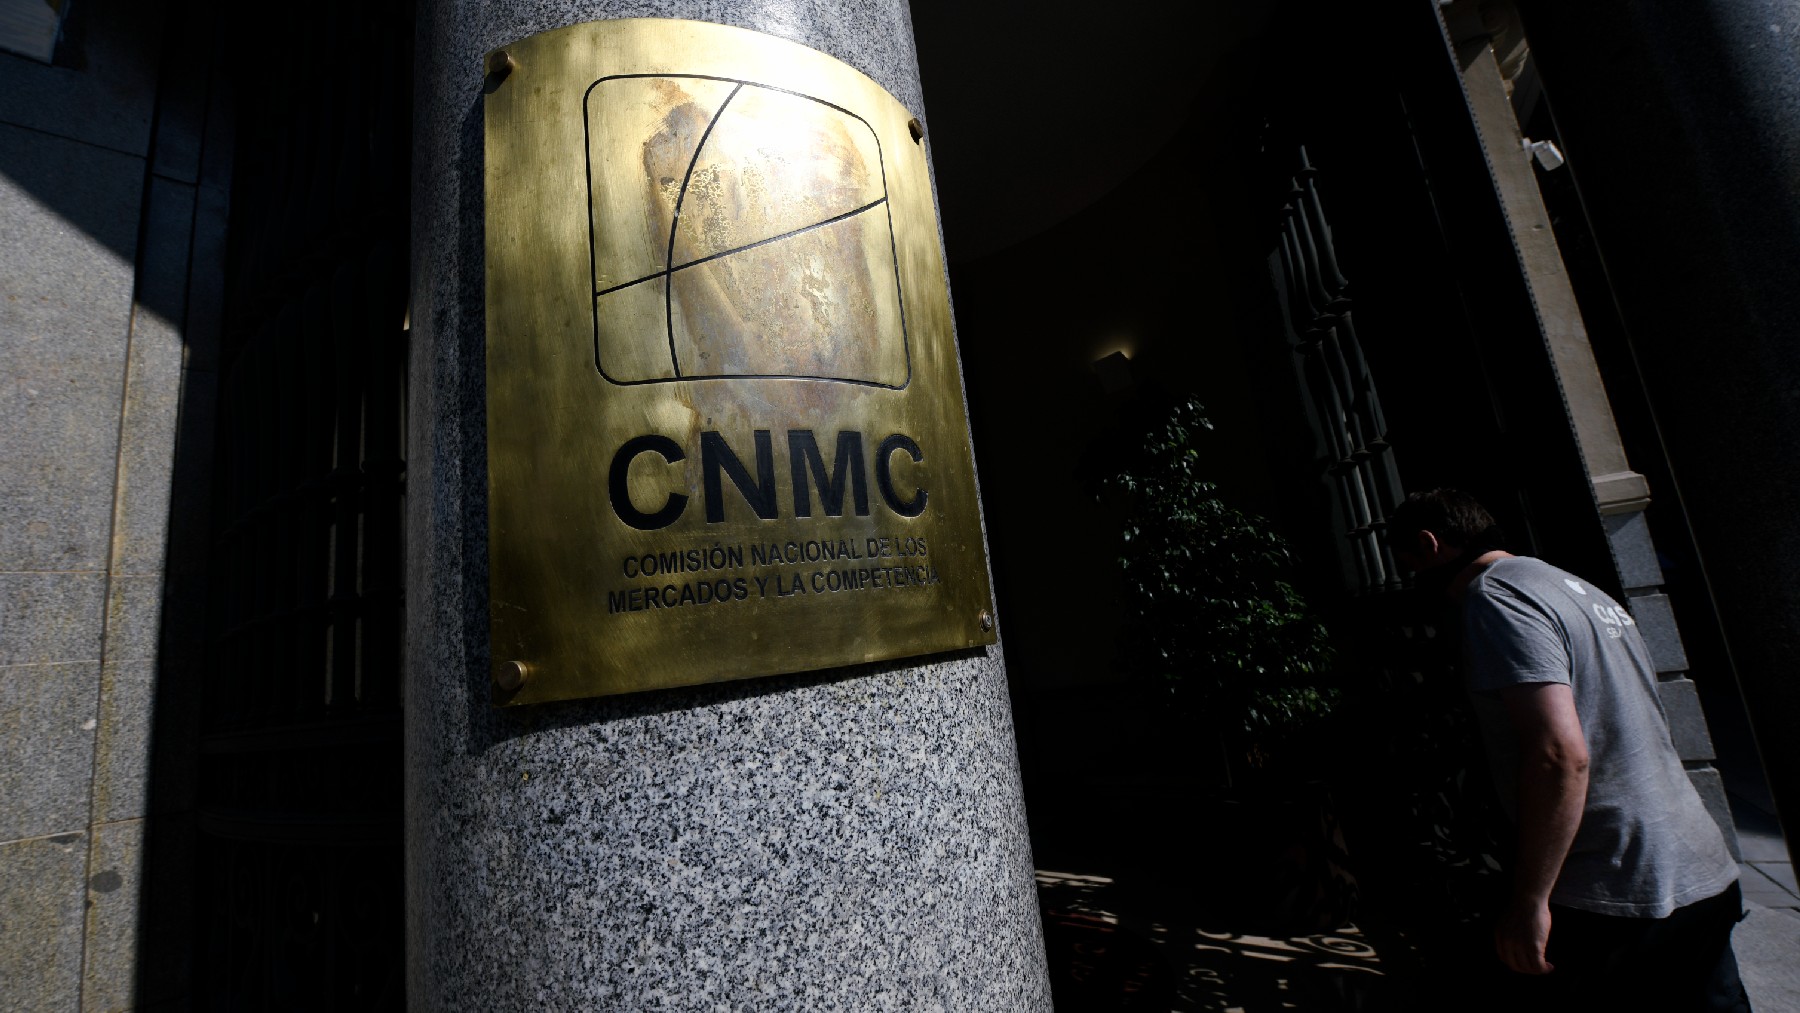 Comisión Nacional de los Mercados y la Competencia (CNMC).